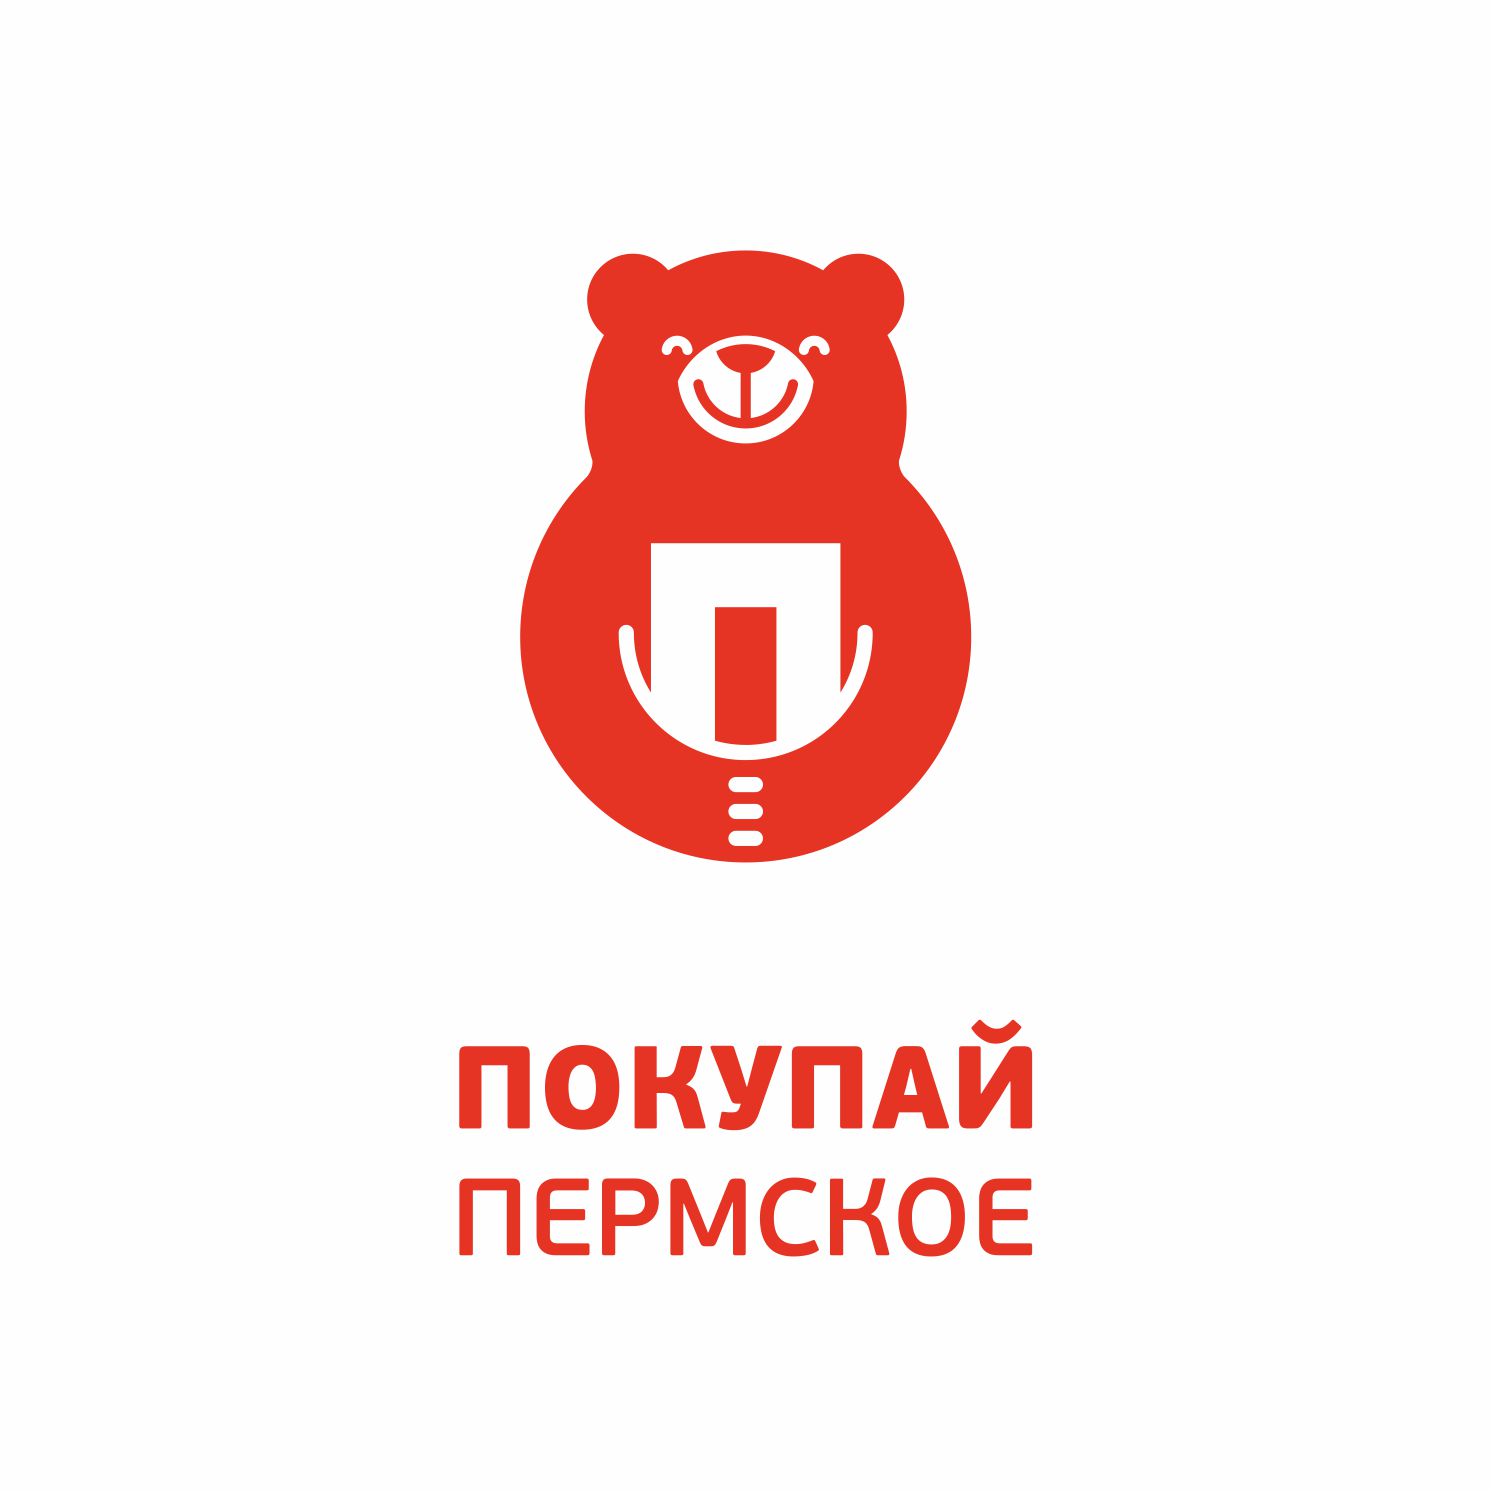 Логотип покупай пермское